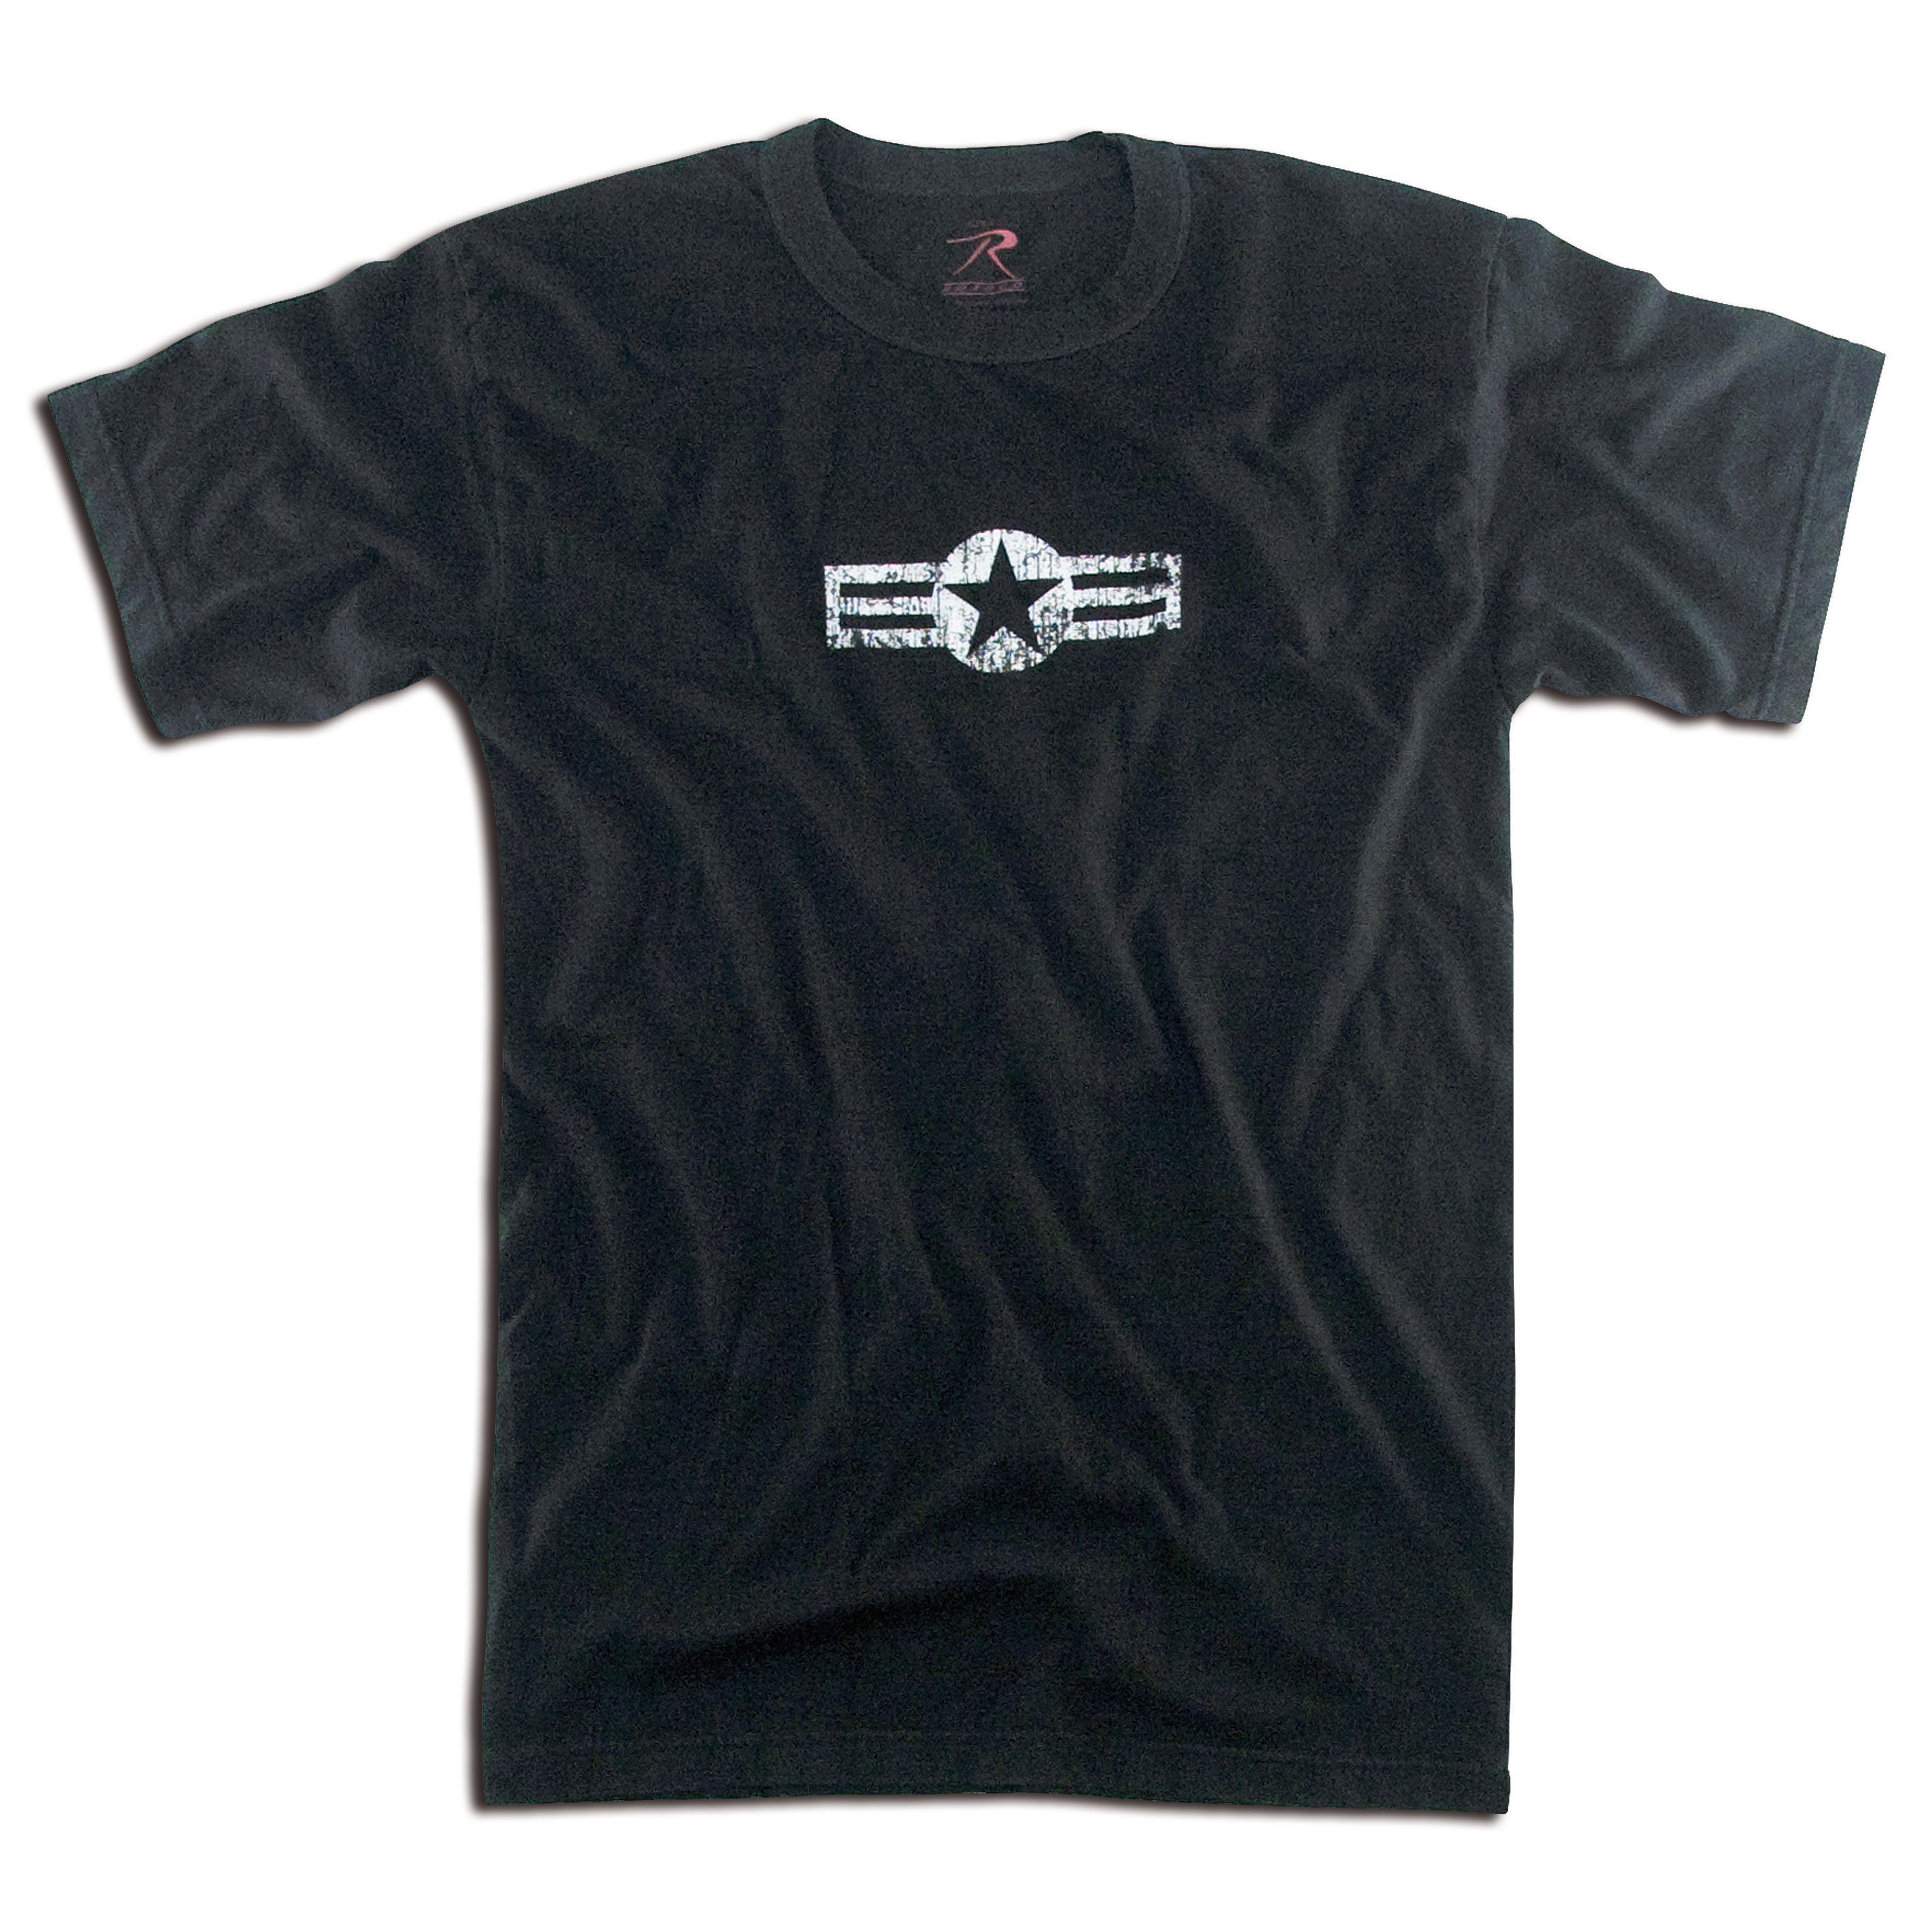 T-Shirt Air Corp black | T-Shirt Air Corp black | Shirts | Shirts | Men ...